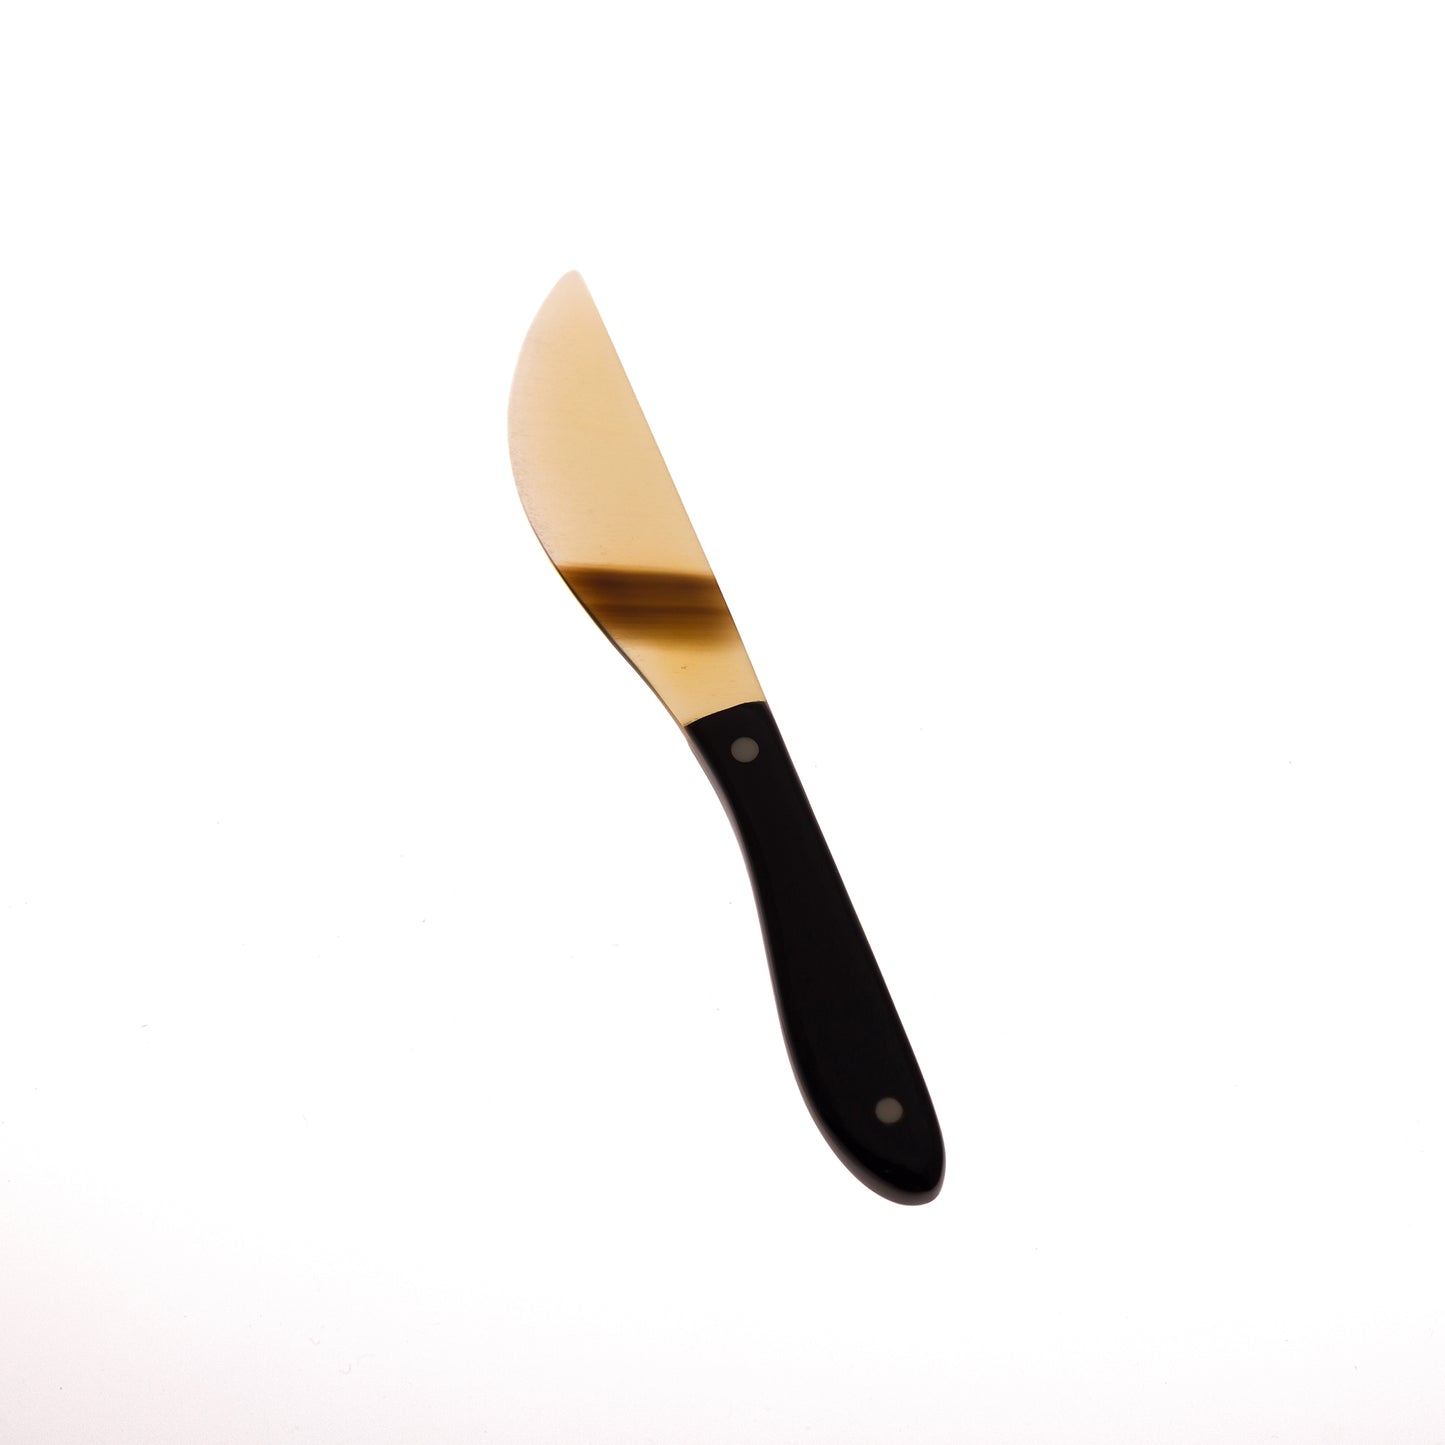 Horn Butter Knife - Natural Horn/Black Handle